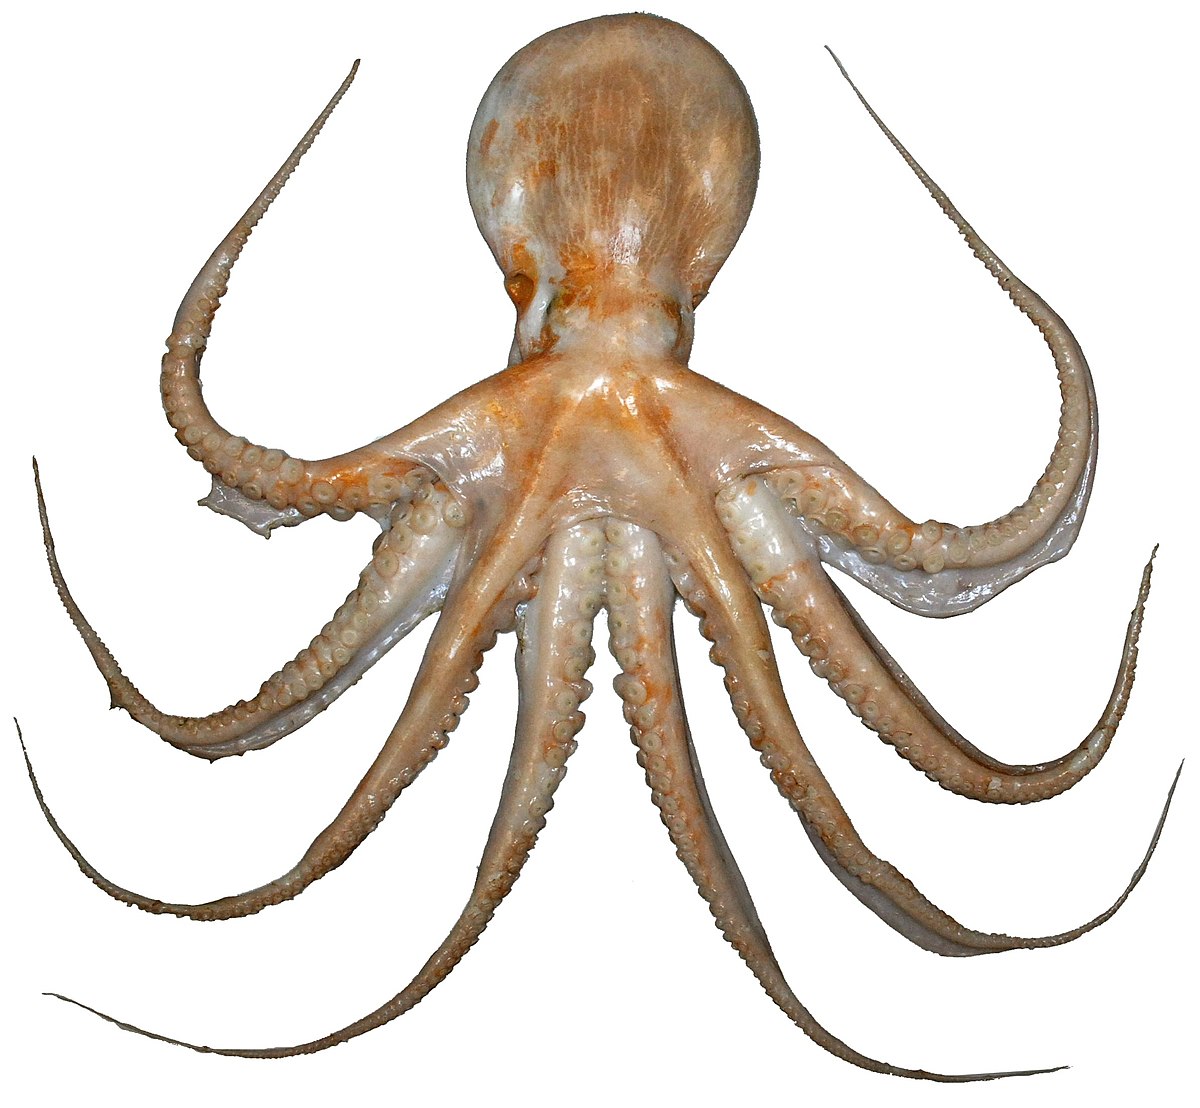 File:E zealandicus (nền trắng).jpg - Wikipedia sẽ mang đến cho bạn cái nhìn tuyệt vời về một loài bạch tuộc độc đáo sống cùng với môi trường nền trắng. Bức ảnh chi tiết, rõ nét sẽ cung cấp cho bạn những thông tin đầy thú vị về loài động vật này.